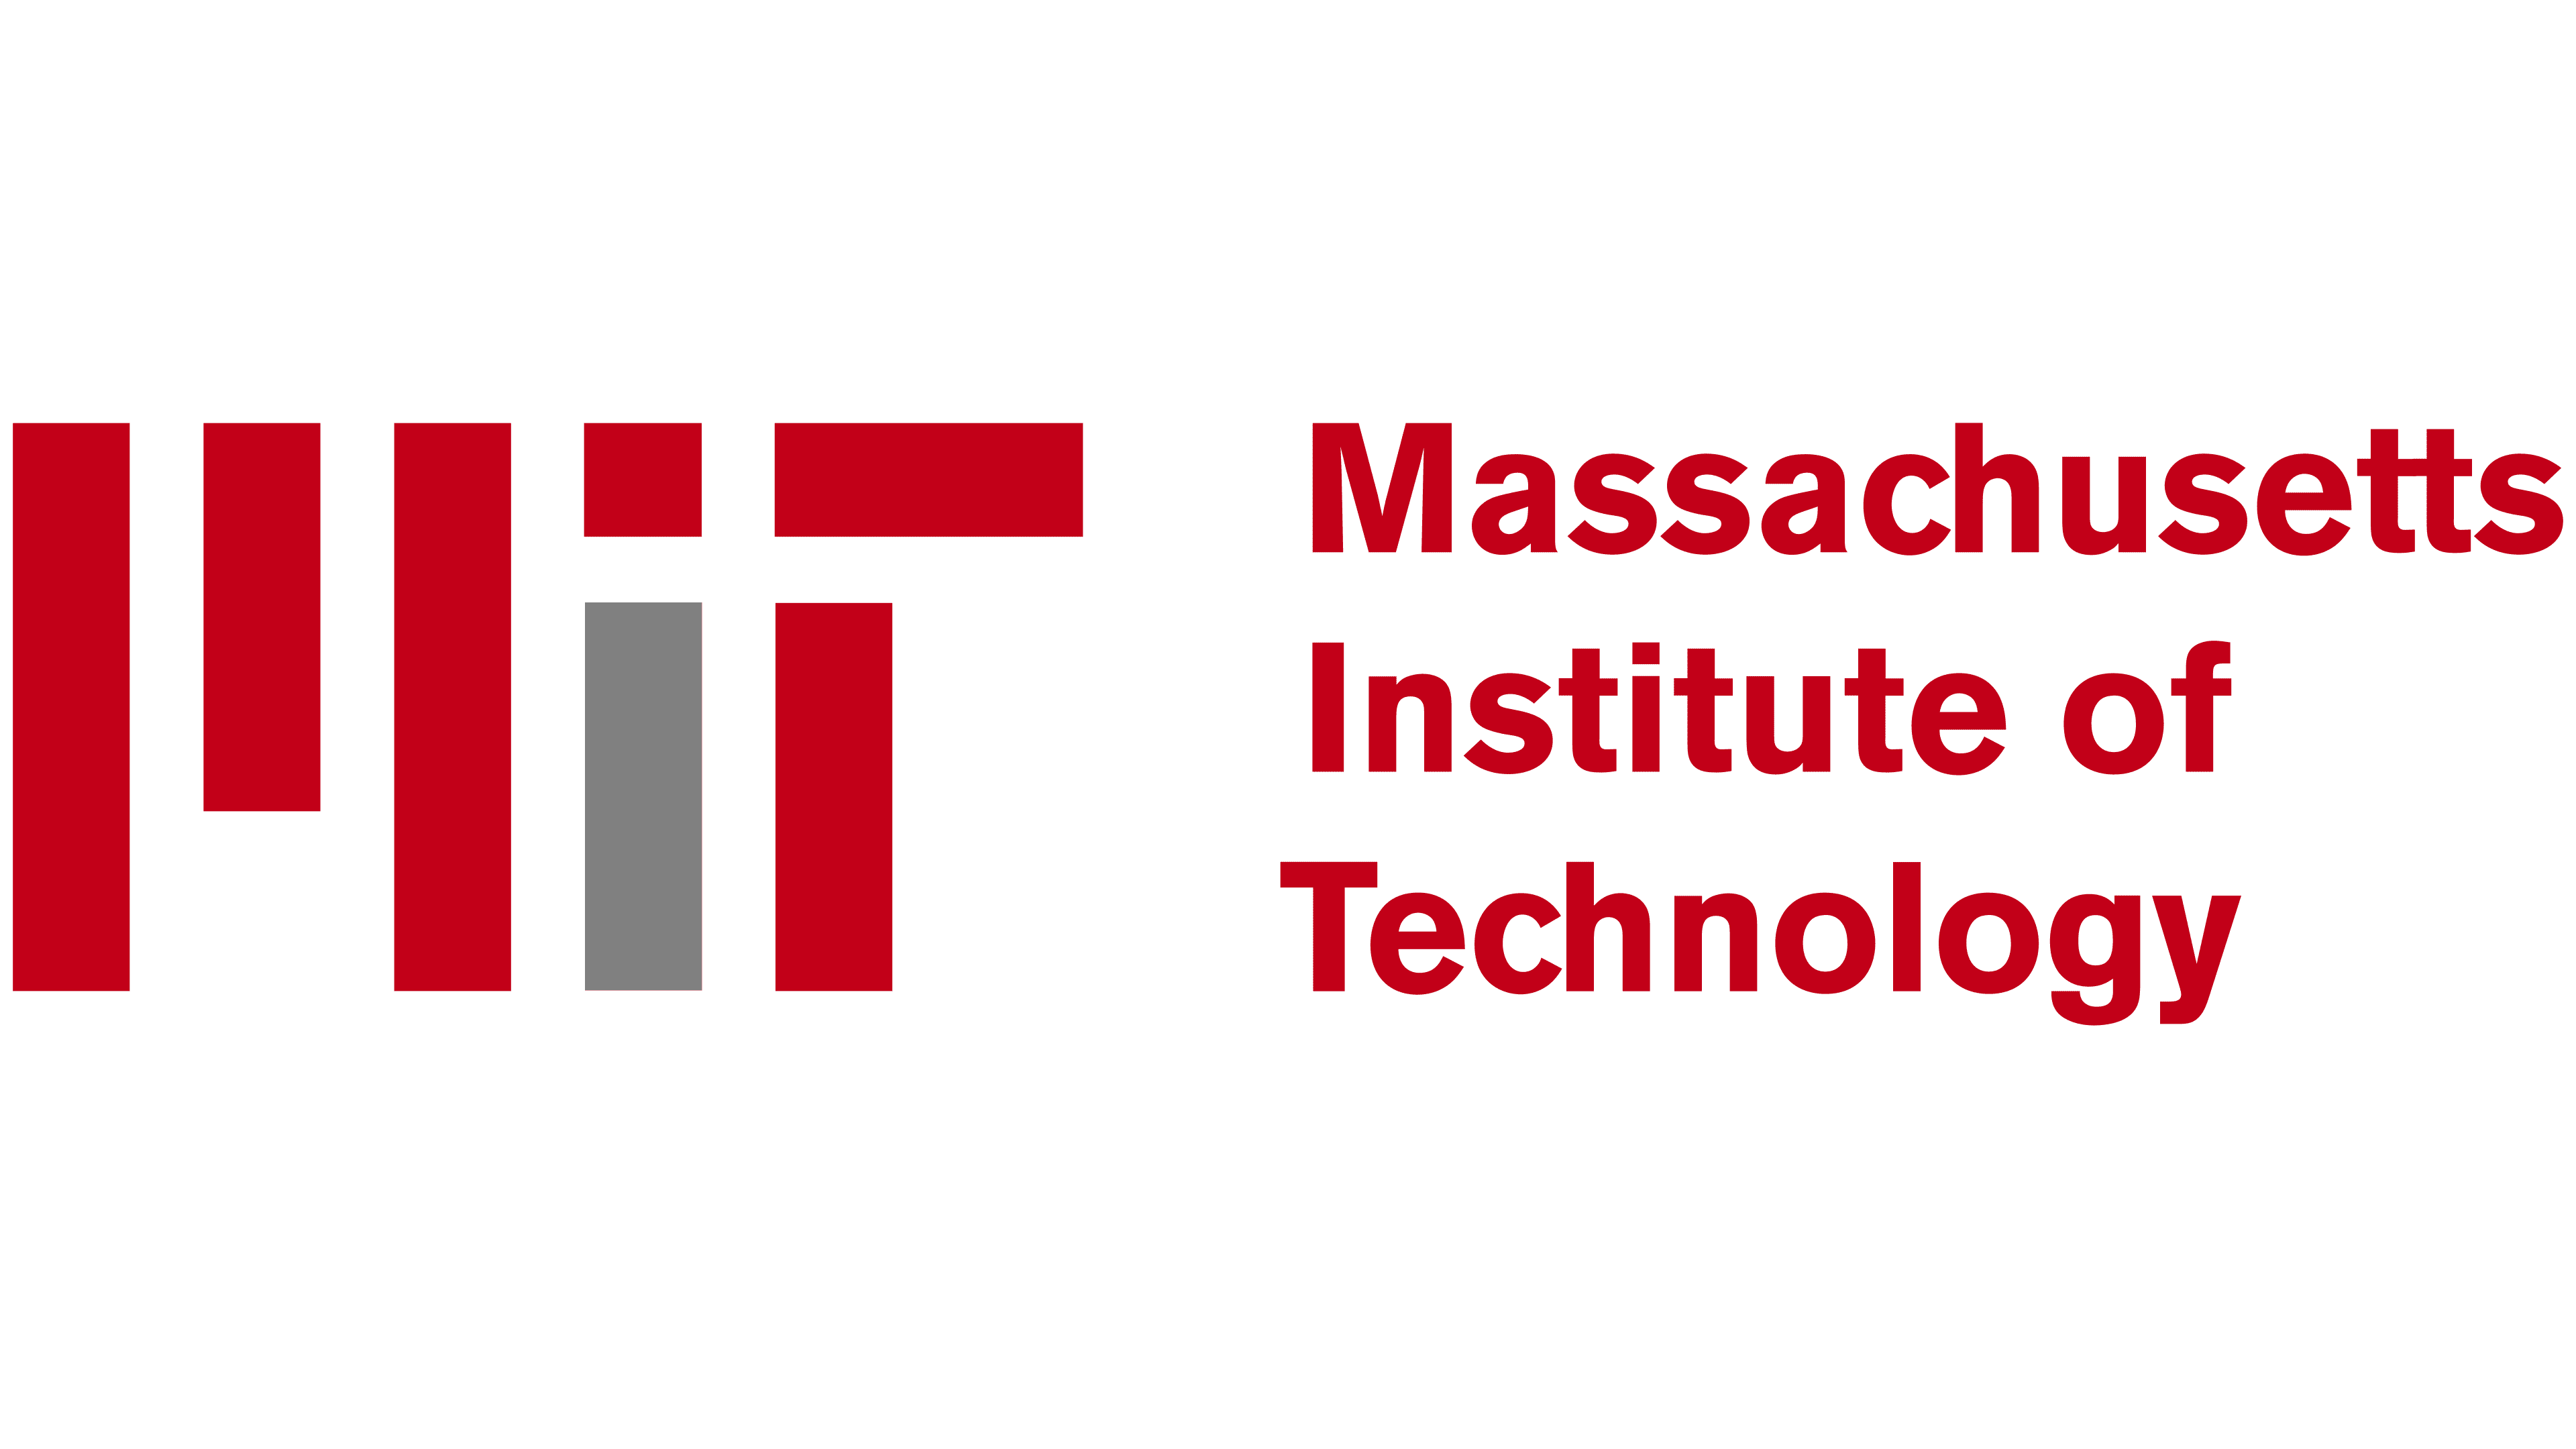 MIT 로고 - Storia e significato dell'emblema del Marchio